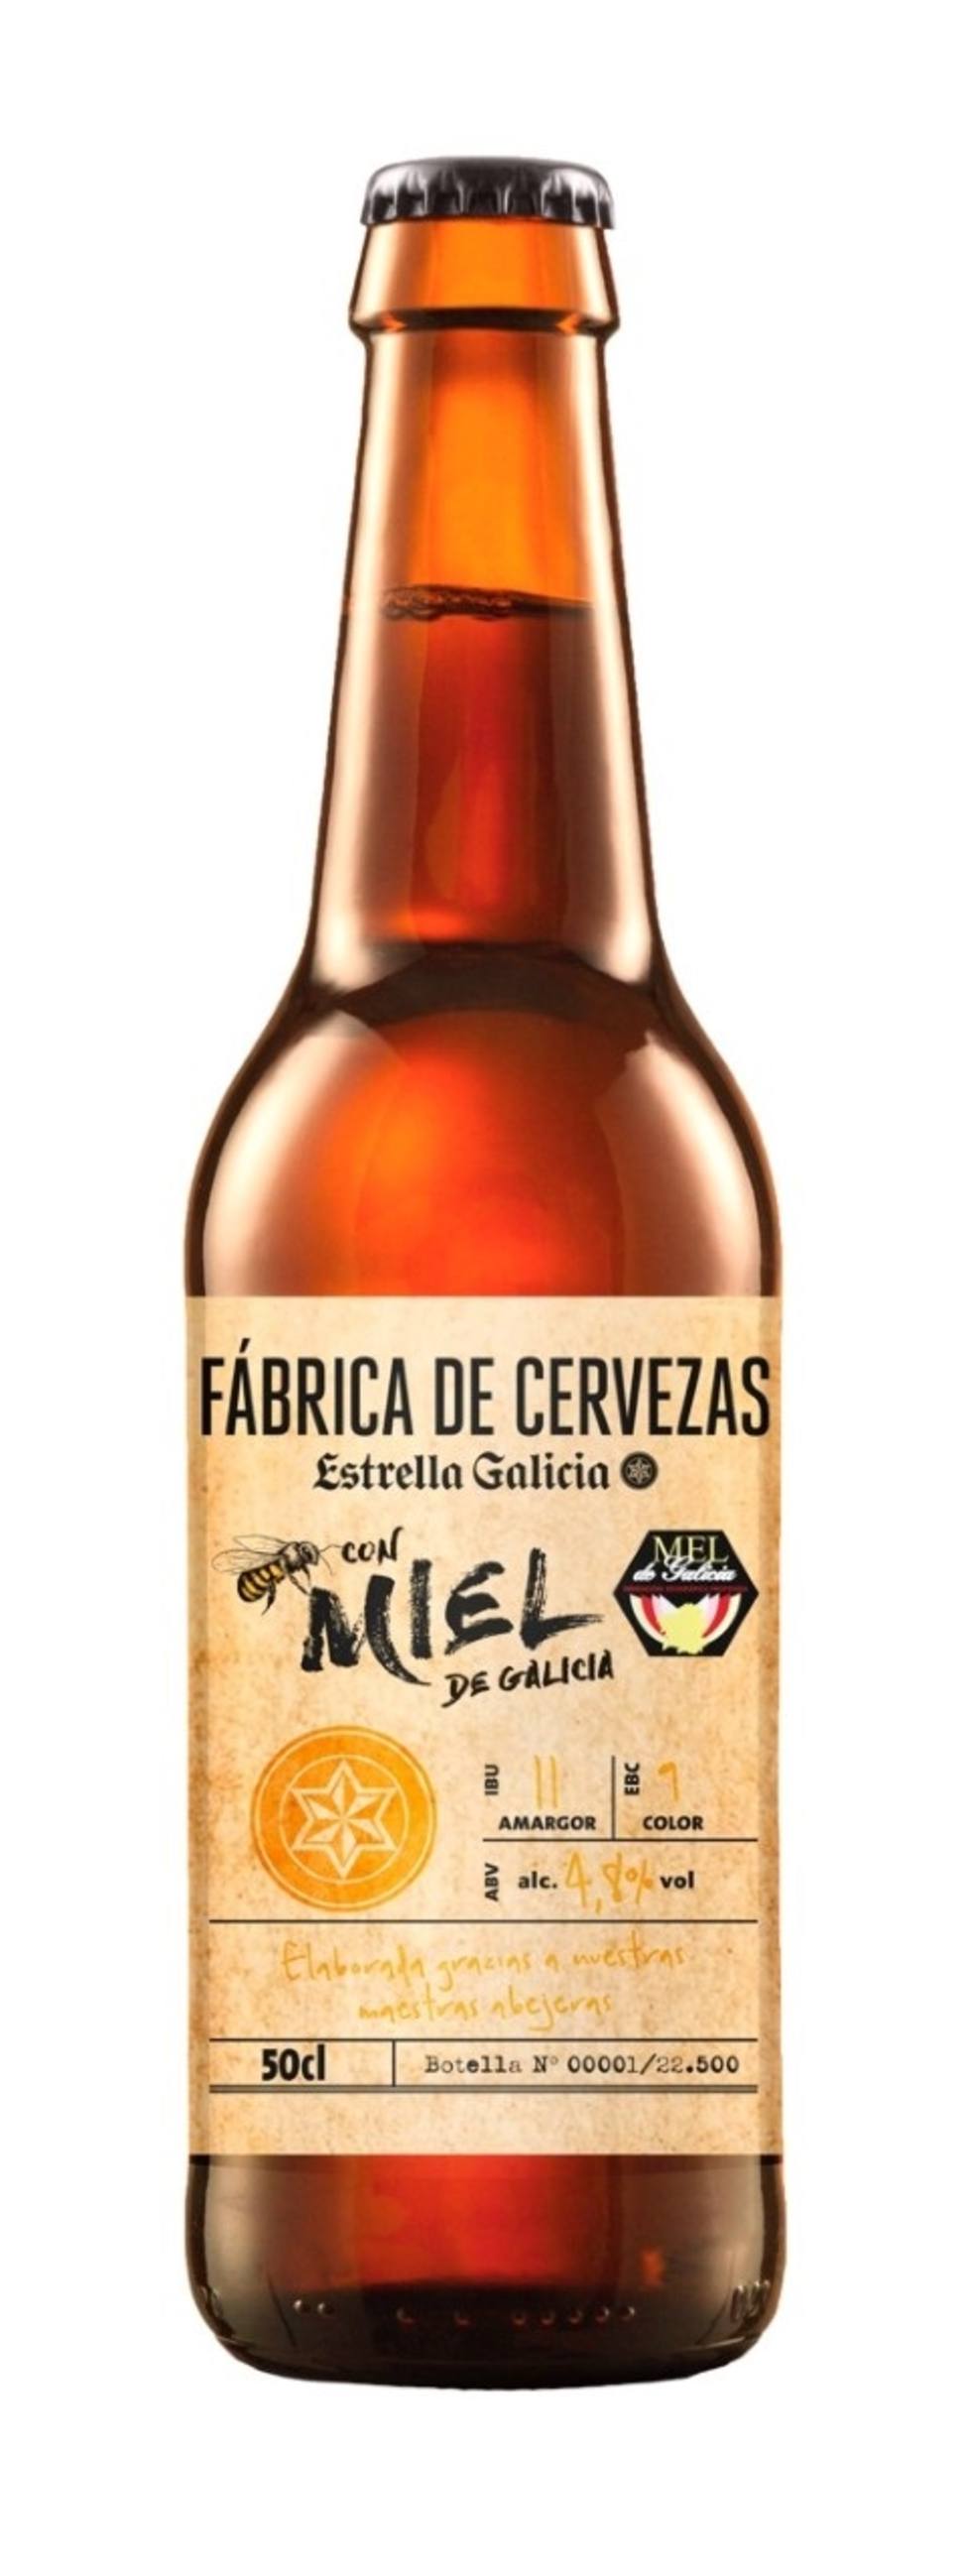 Estrella Galicia lanza una cerveza con miel de abejas gallegas